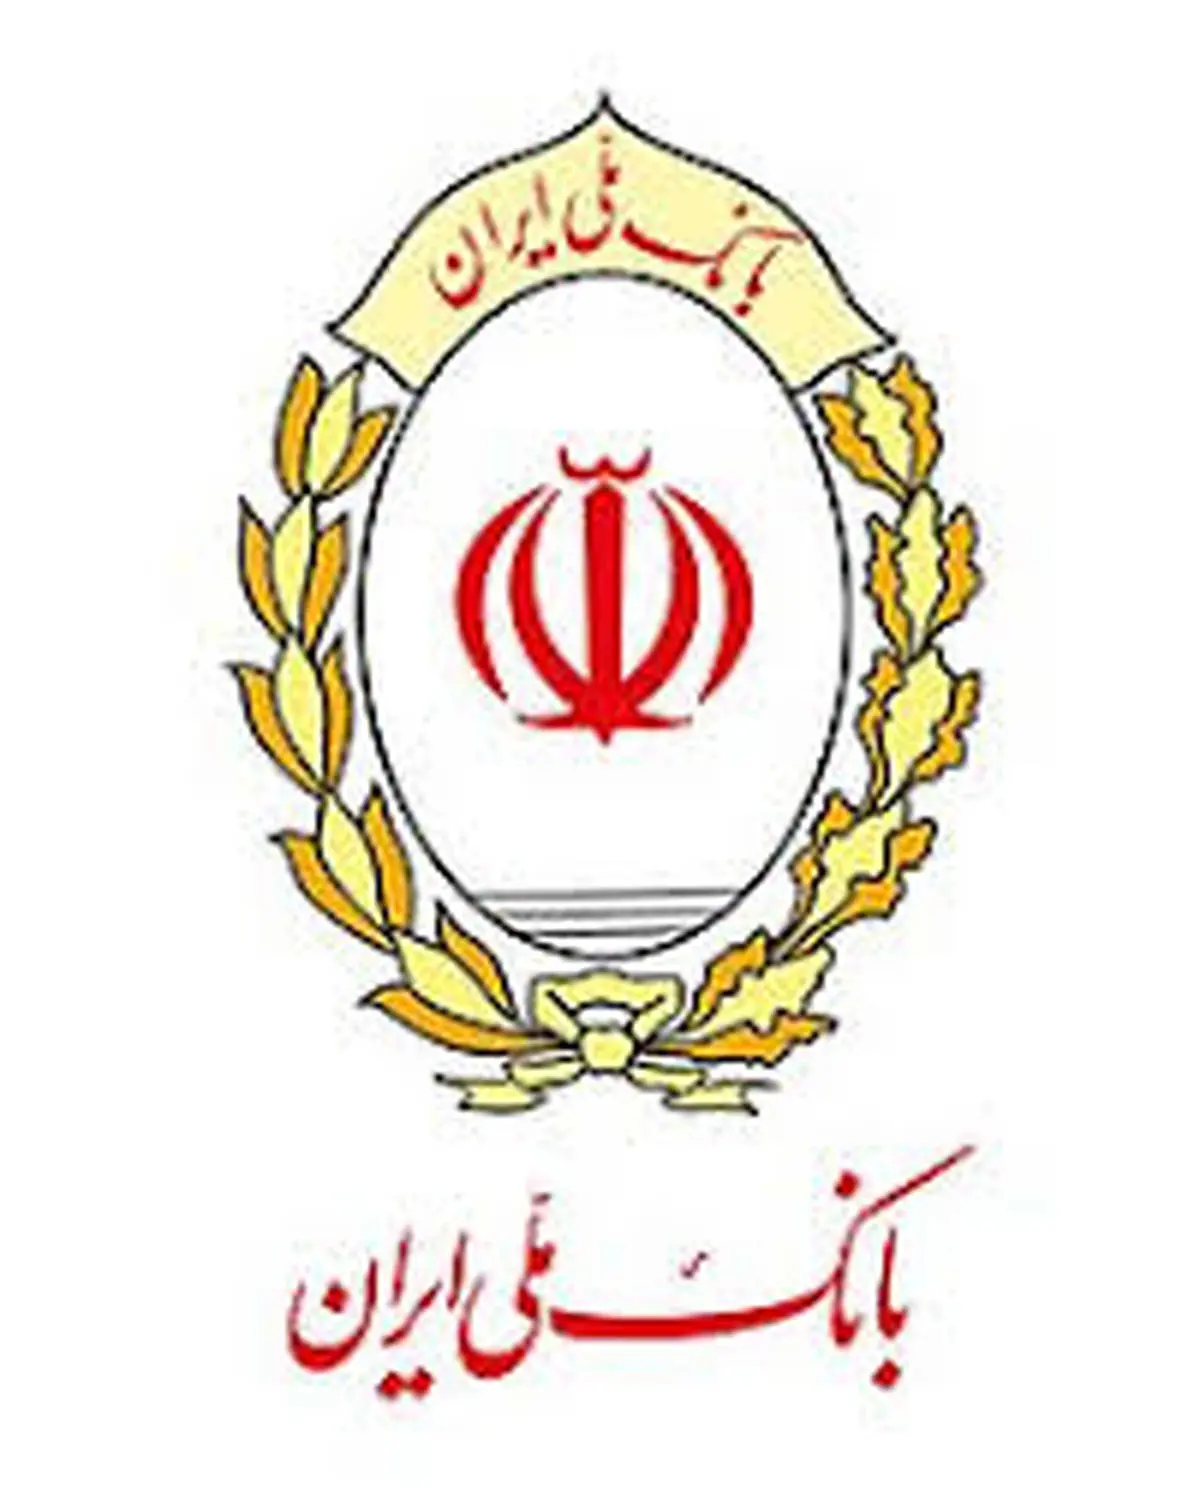  برداشت خودکار، خدمت جدید بانک ملی ایران